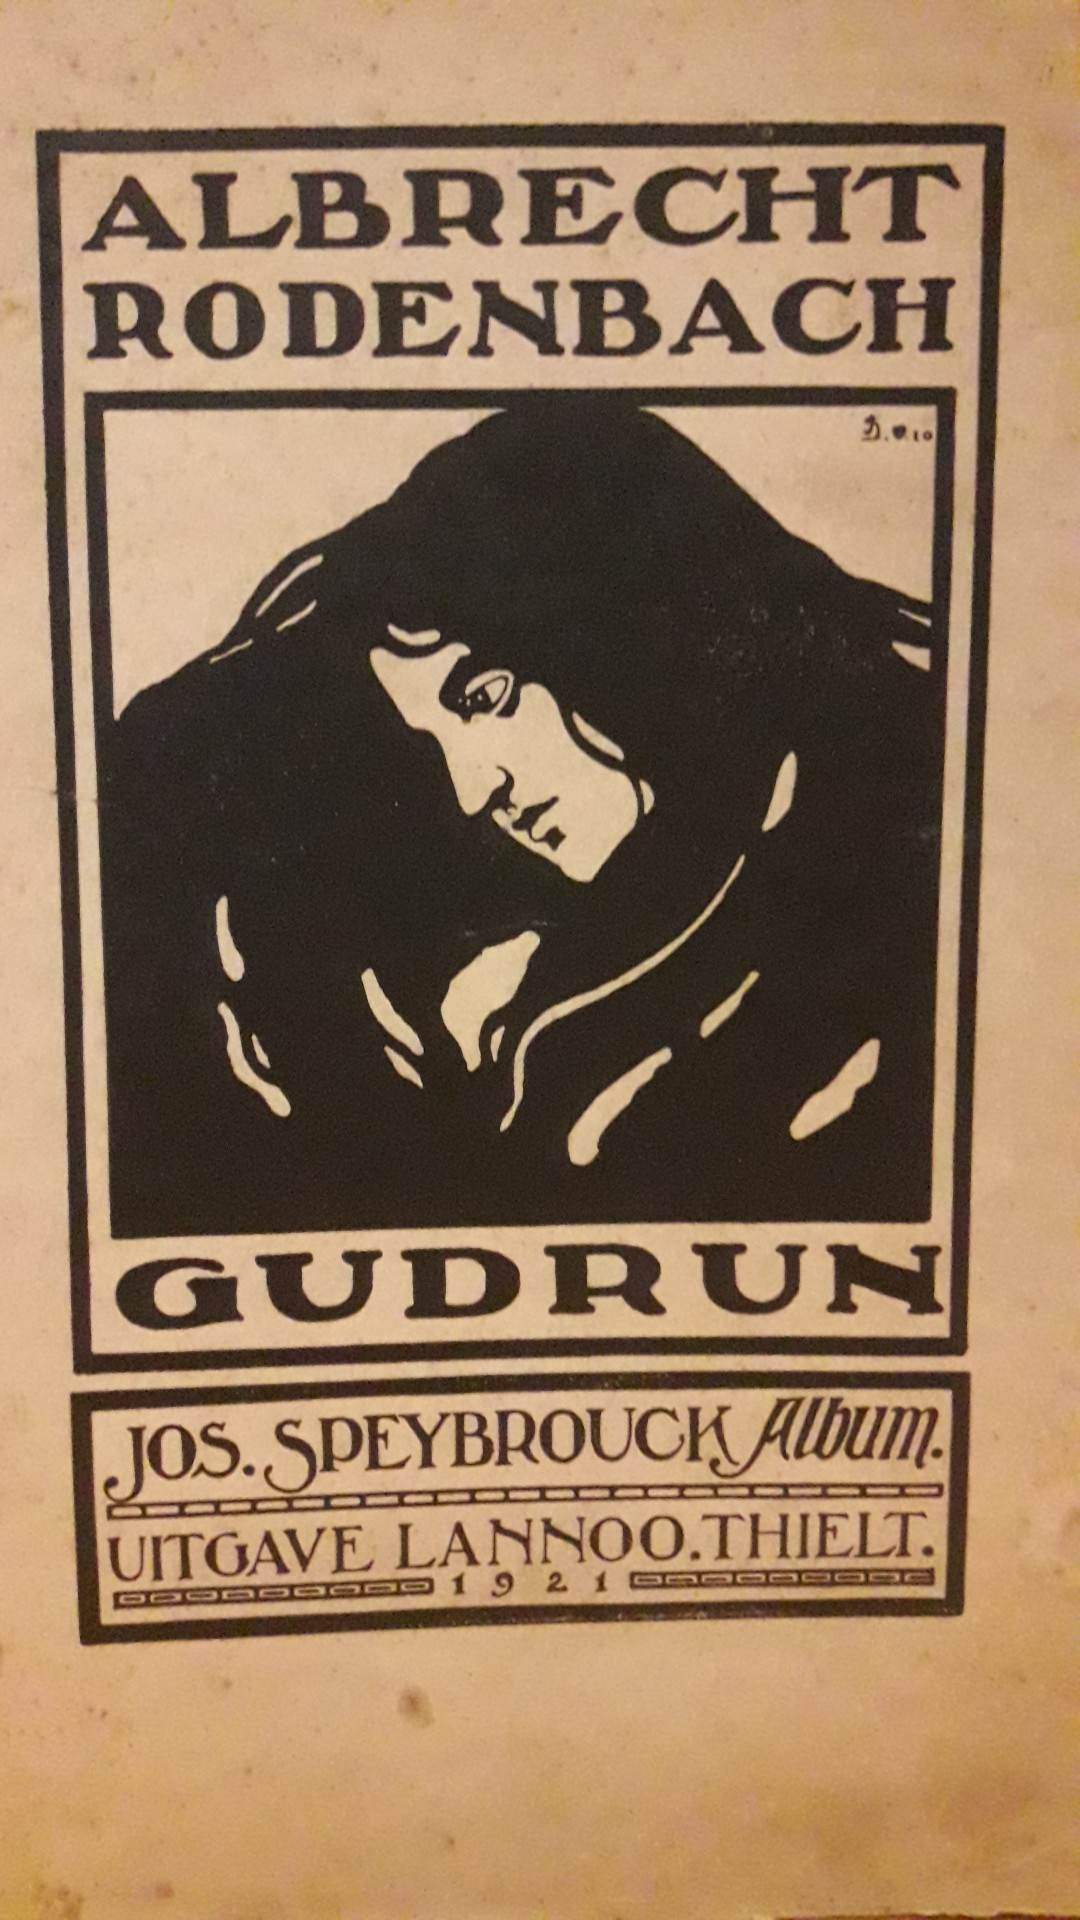 Albrecht Rodenbach - Gudrun  tekeningen Speybrouck - uitgave 1929 / 116 blz